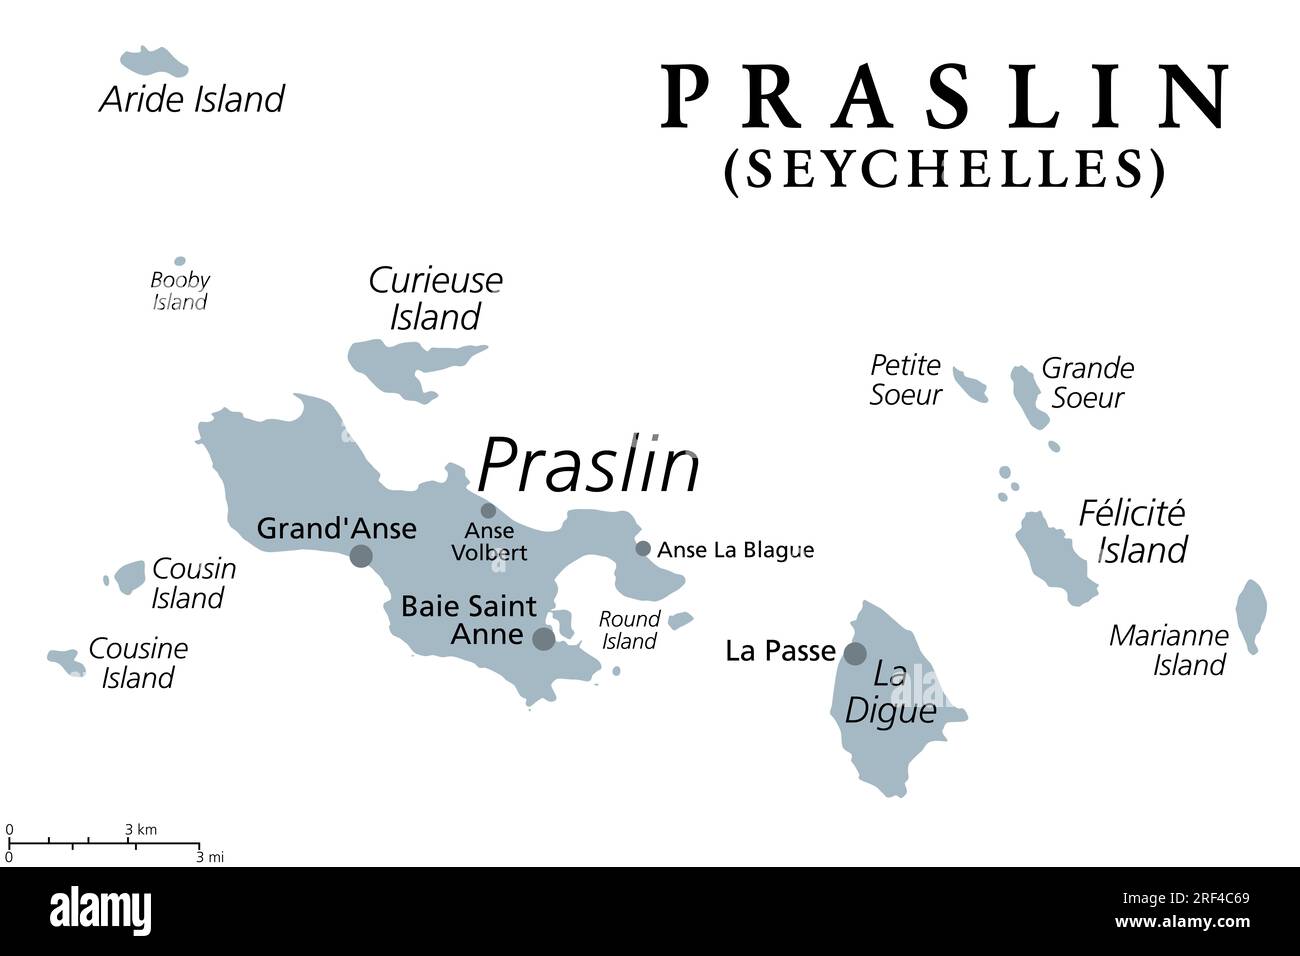 Praslin e le isole vicine, mappa politica grigia. La seconda isola più grande delle Seychelles, una Repubblica e uno stato arcipelagico nell'Oceano Indiano. Foto Stock